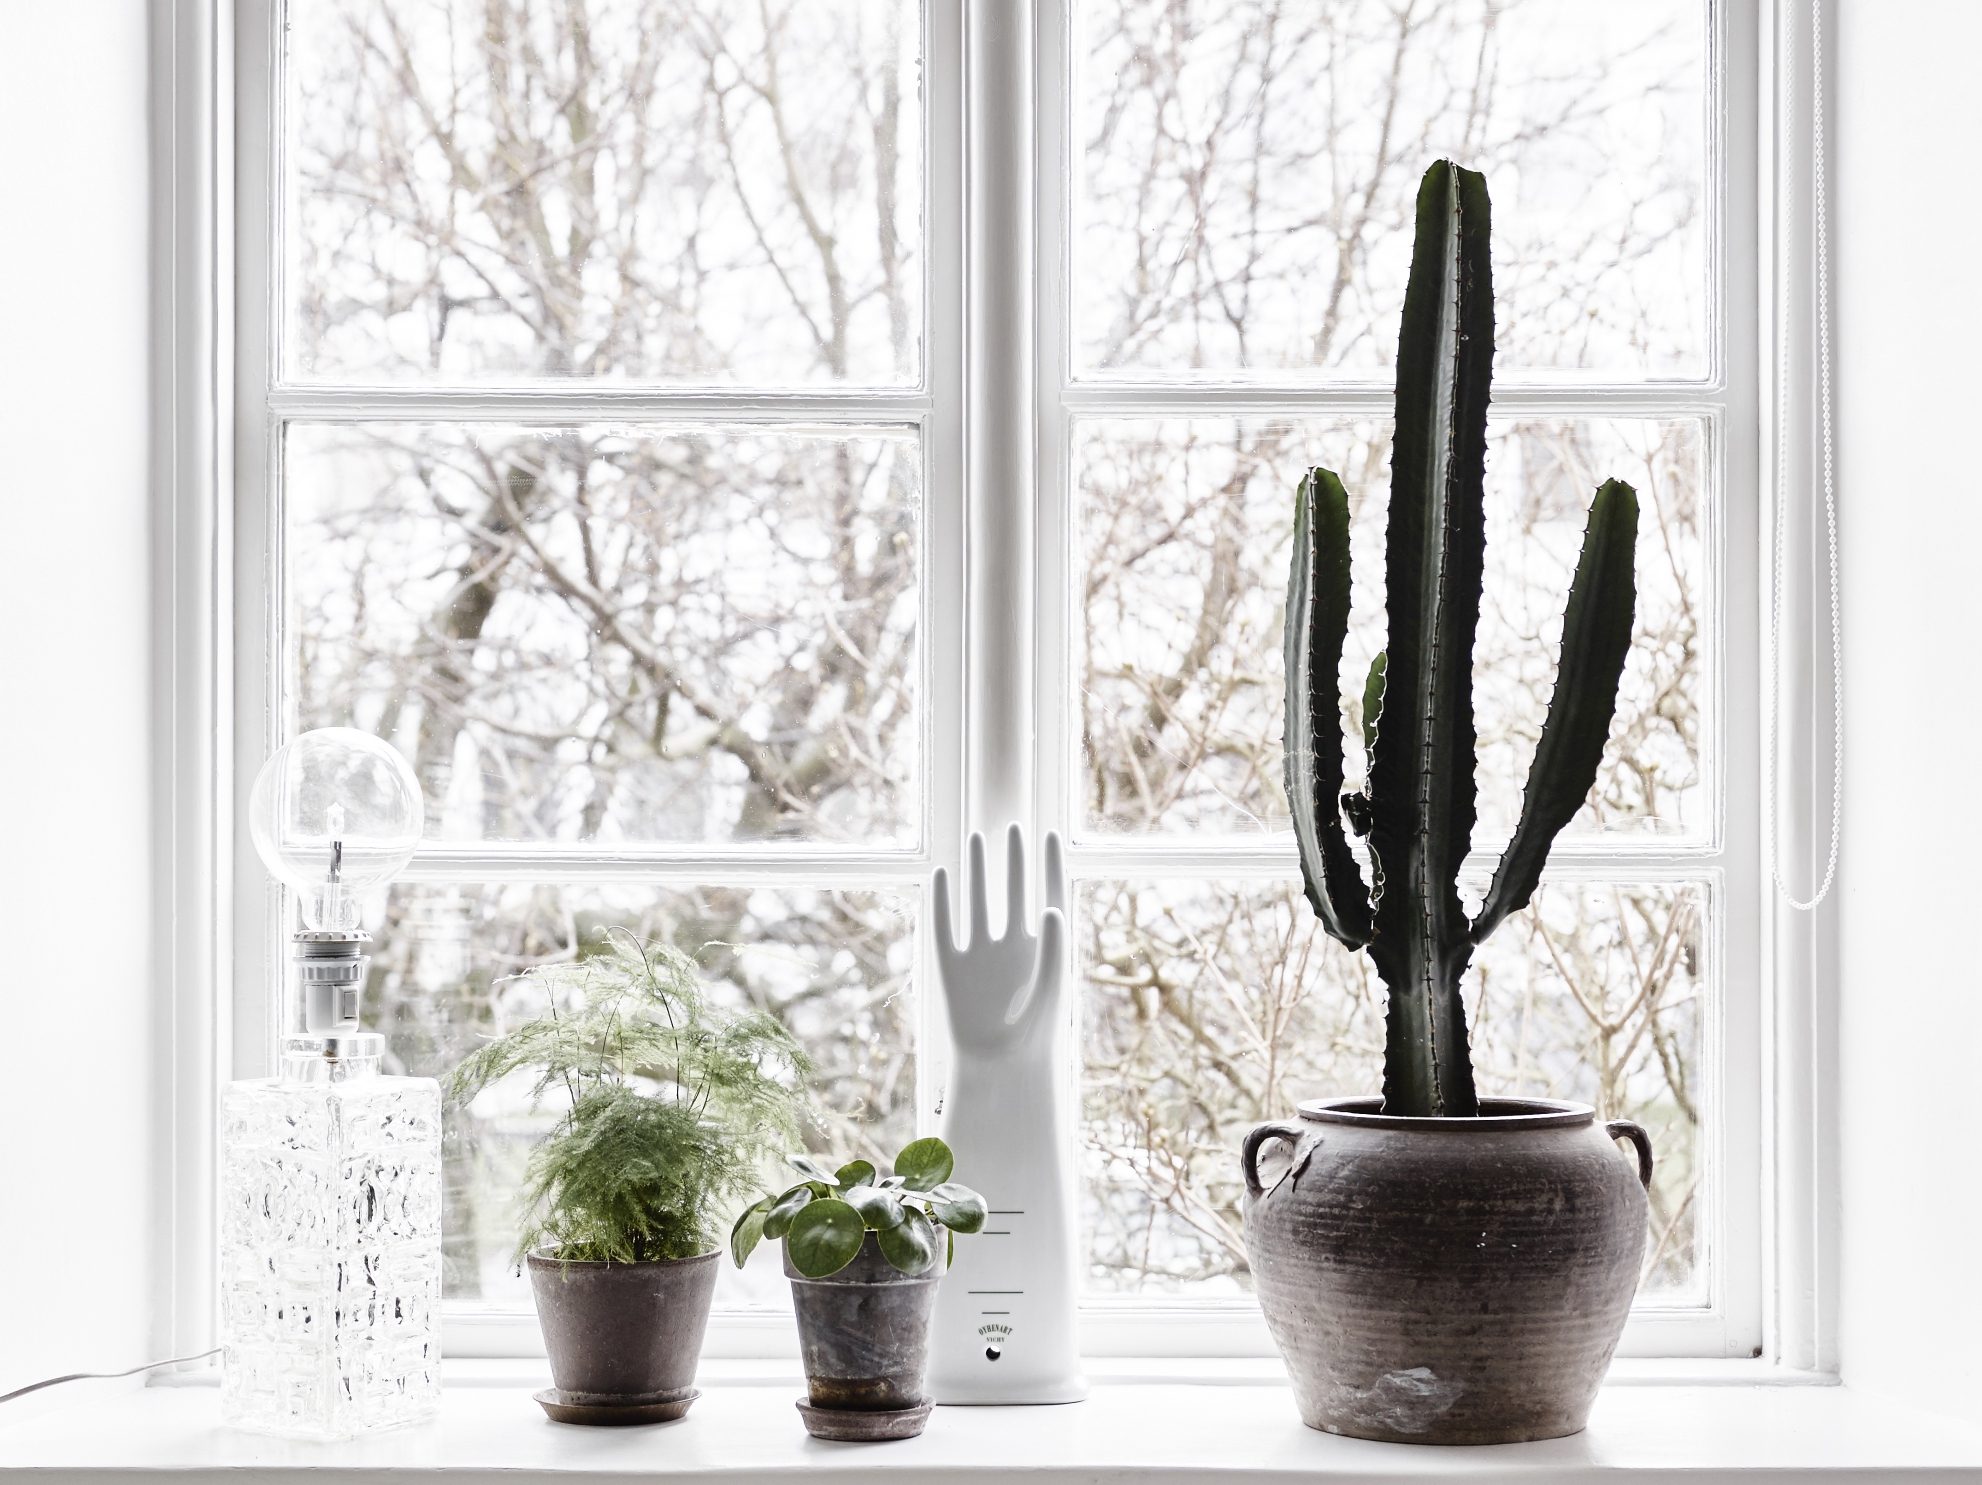 На подоконнике в красивом горшке жил кактус. Кактус на подоконнике. Комнатные растения на окне. Комнатные растения окно зима. Комнатные растения зимой.